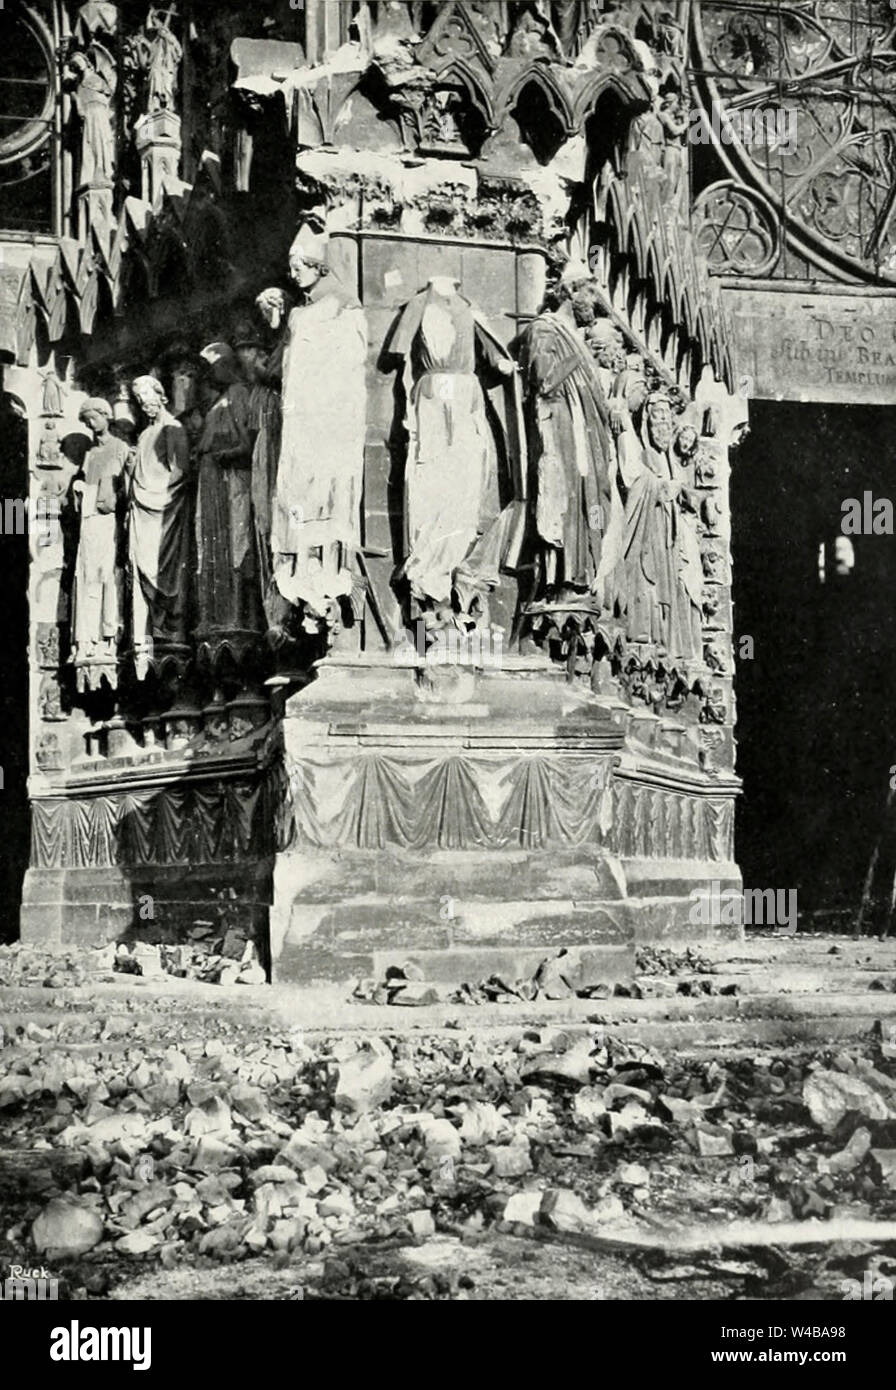 Der Pier, die in den zentralen und nördlichen Portale der Fassade trennt - Schäden an der Kathedrale von Reims während des Ersten Weltkrieges - die Statue der Königin von Saba ist zerstört Stockfoto